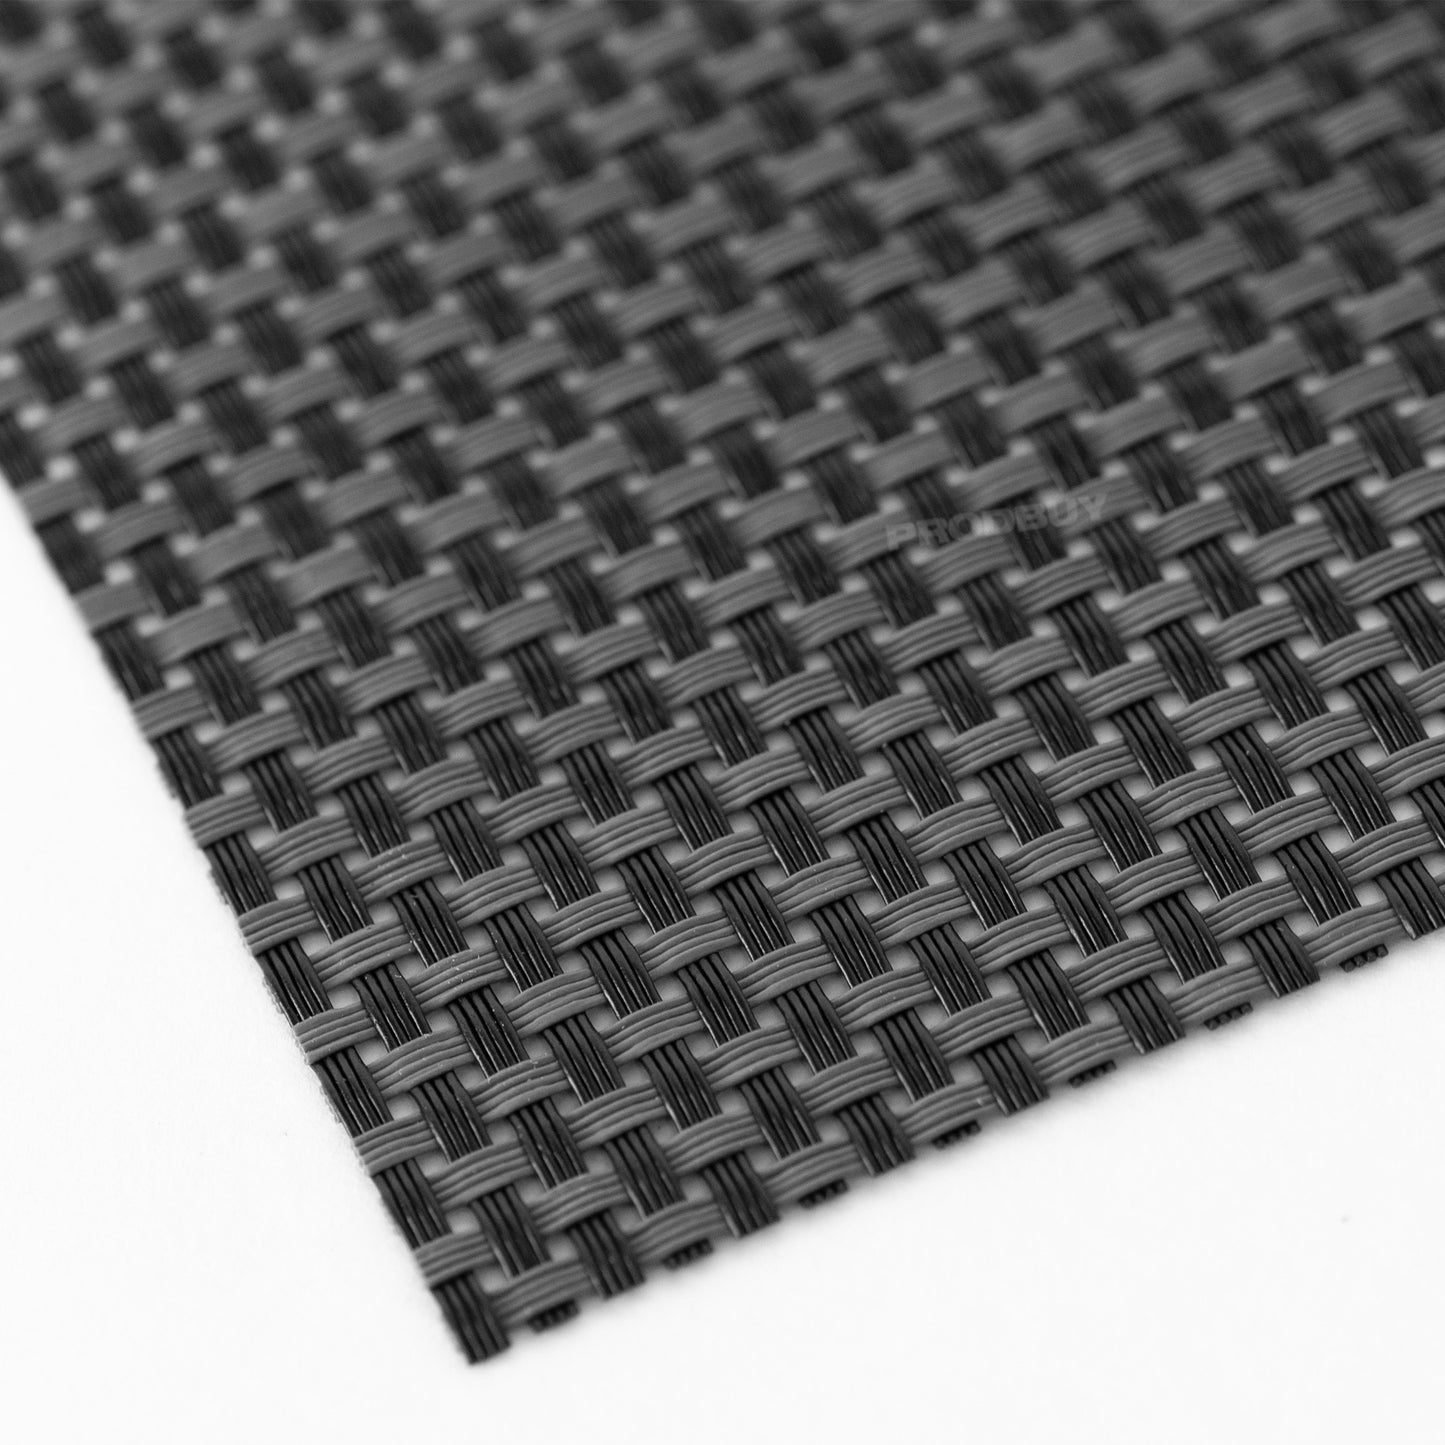 Set of 4 Black Woven Flexible Plastic Placemats